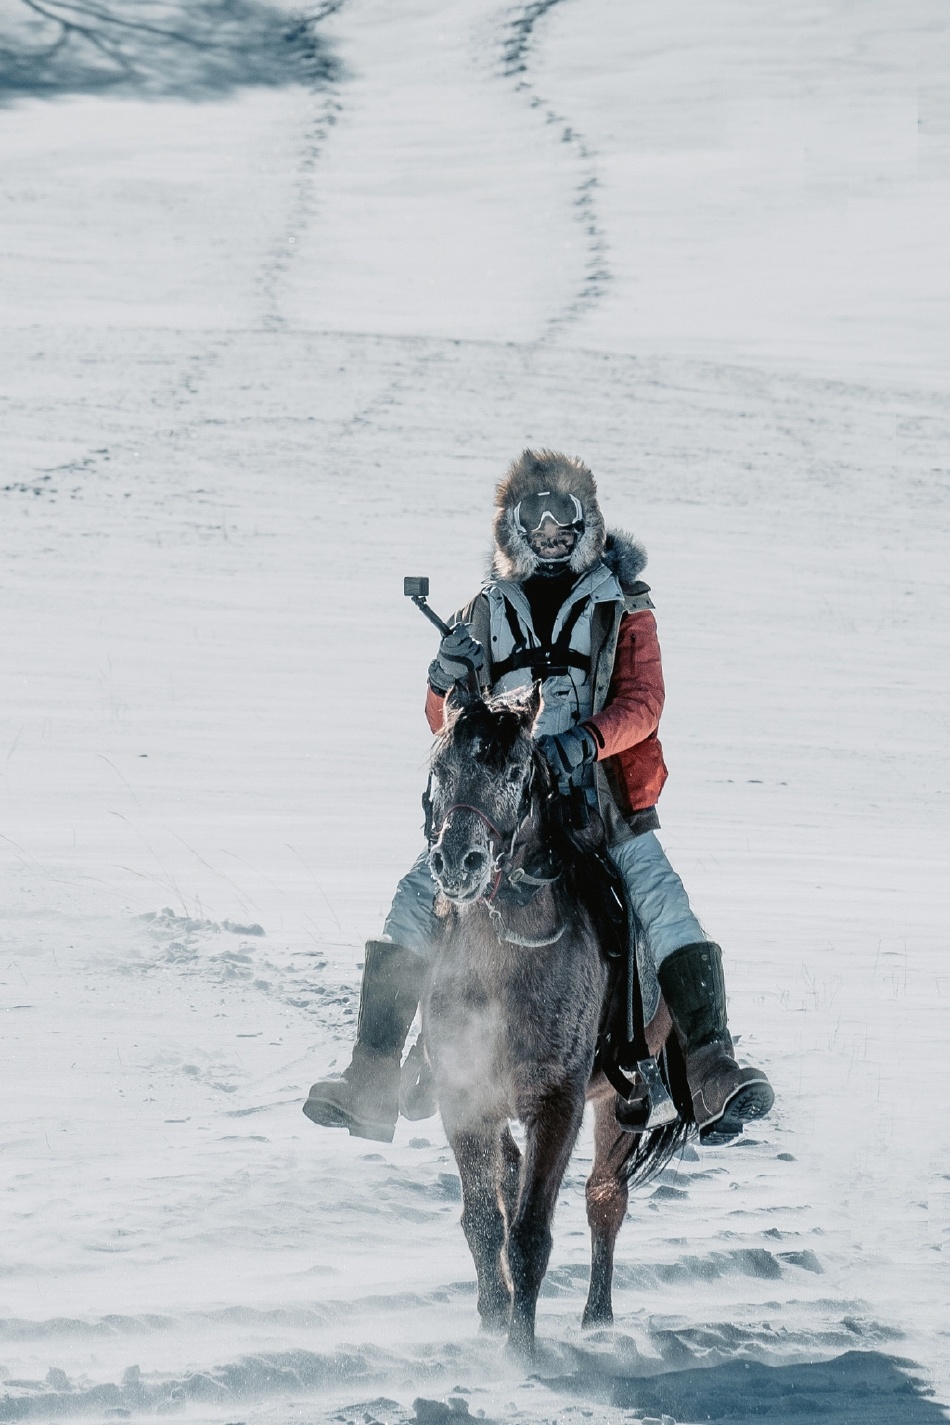 吴磊骑马横跨雪原 对镜比耶满满冬日少年感